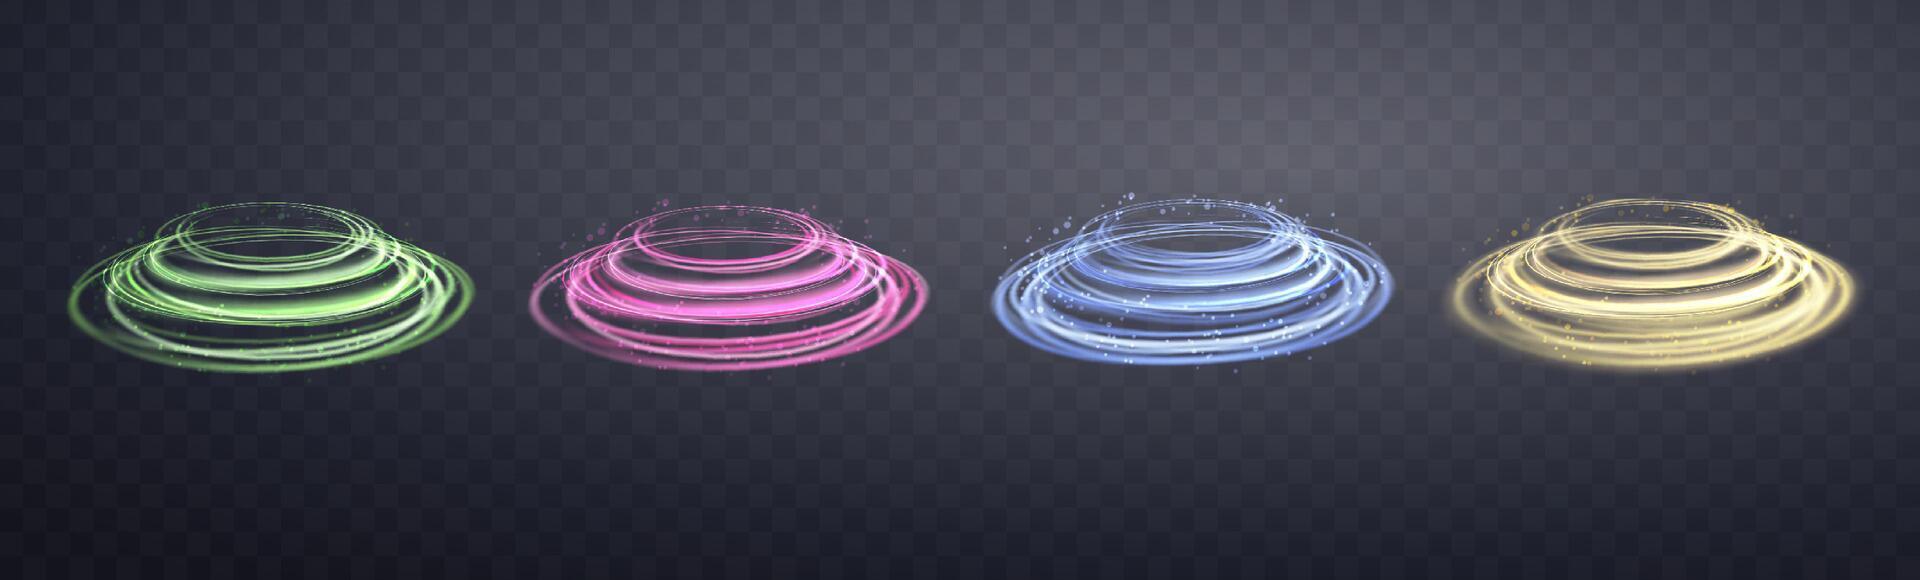 lysande magi ringar uppsättning. neon realistisk energi blossa ringar med gnistrande partiklar. abstrakt ljus effekt vektor